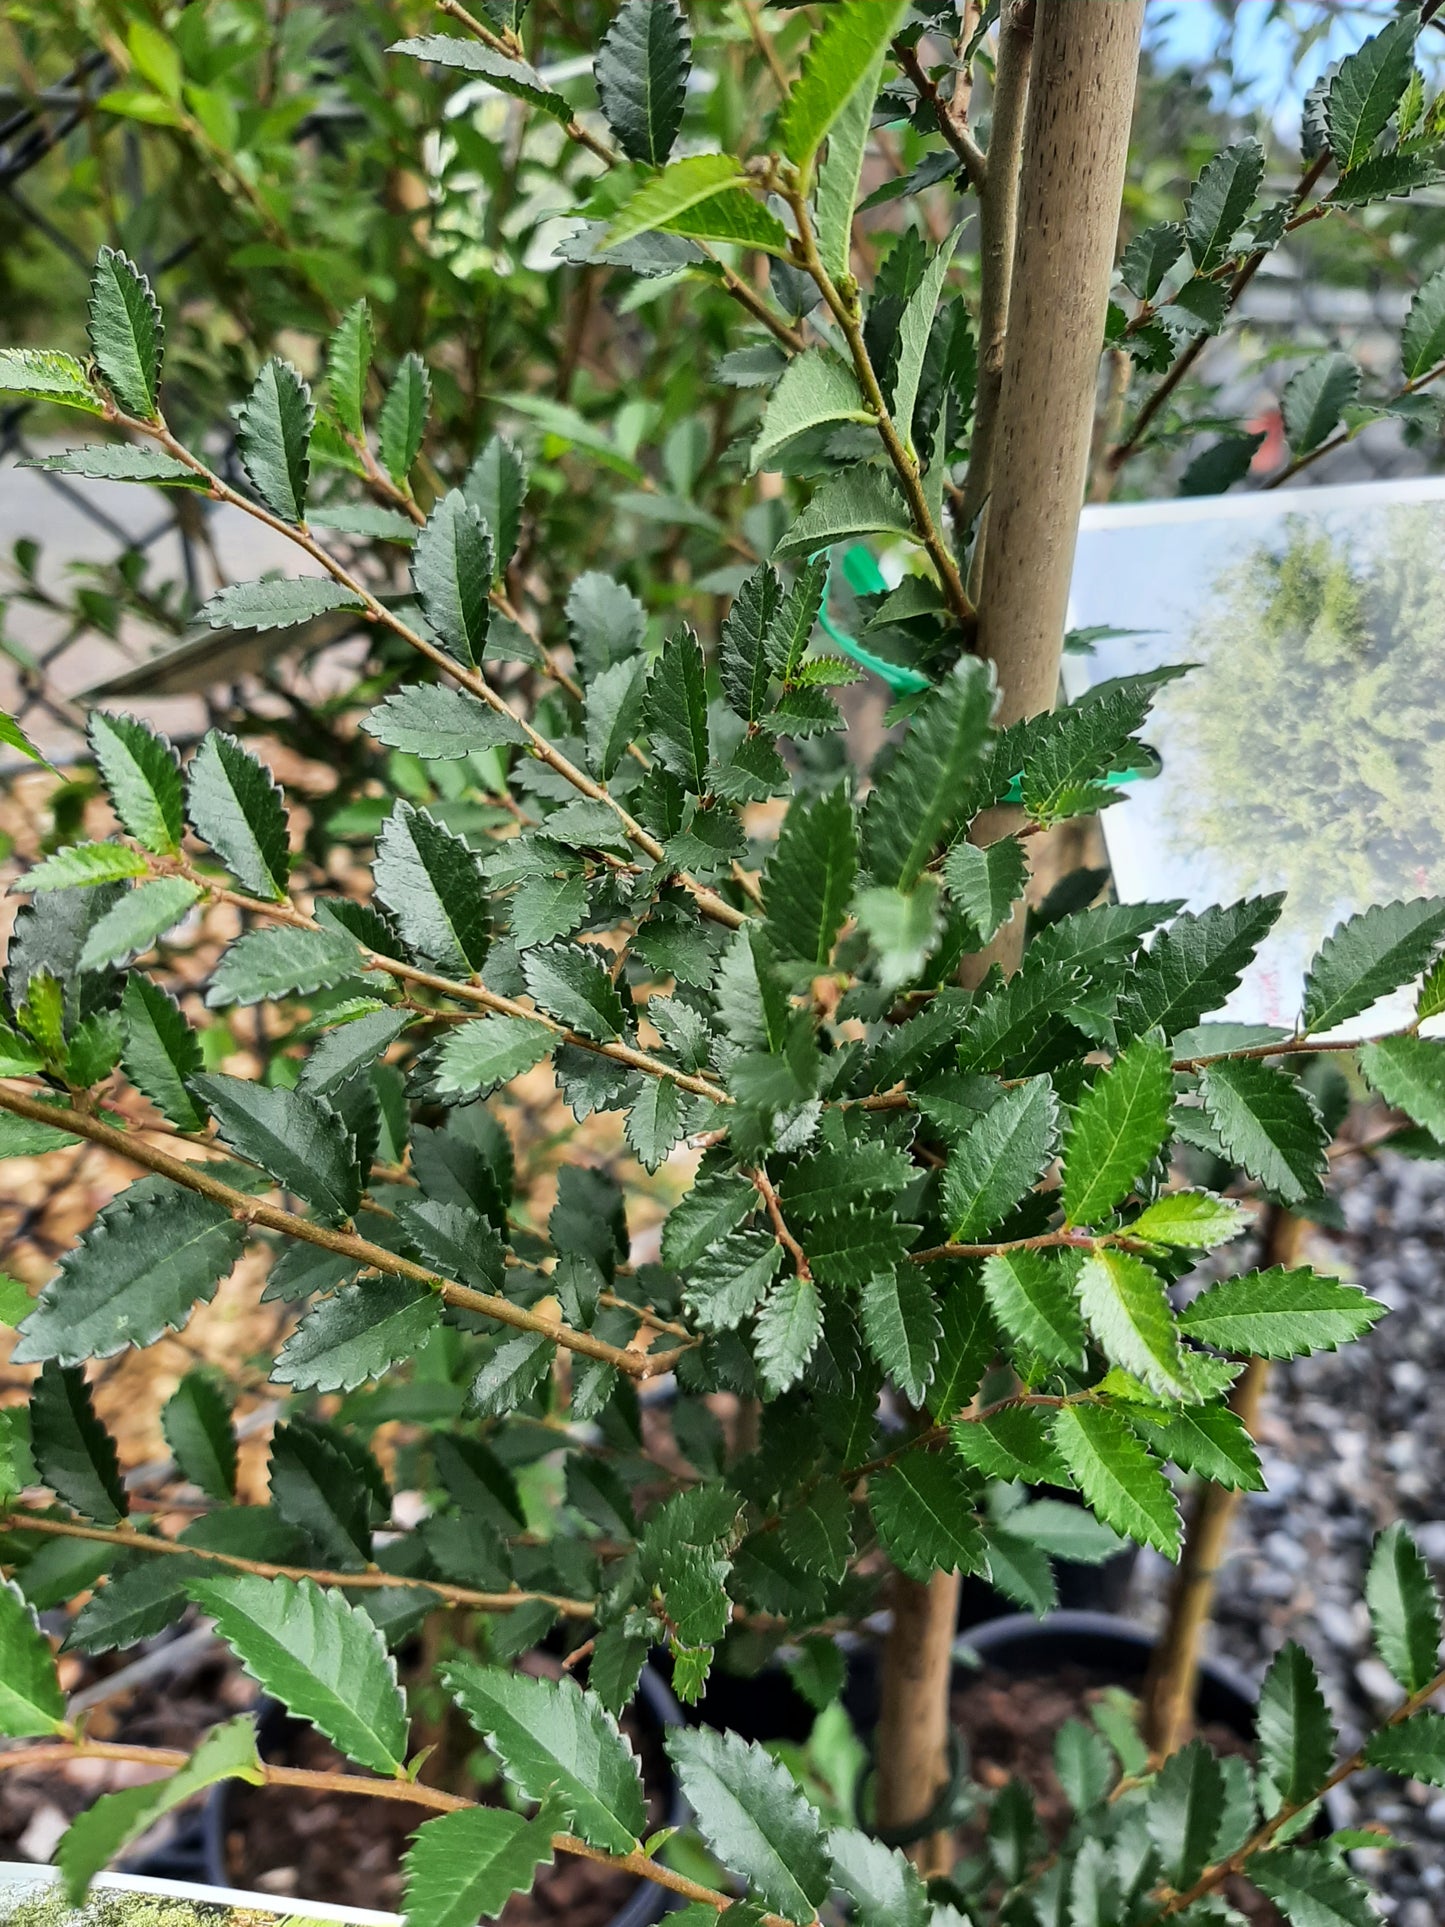 Ulmus parvifolia 'Chinese Elm' 18cm